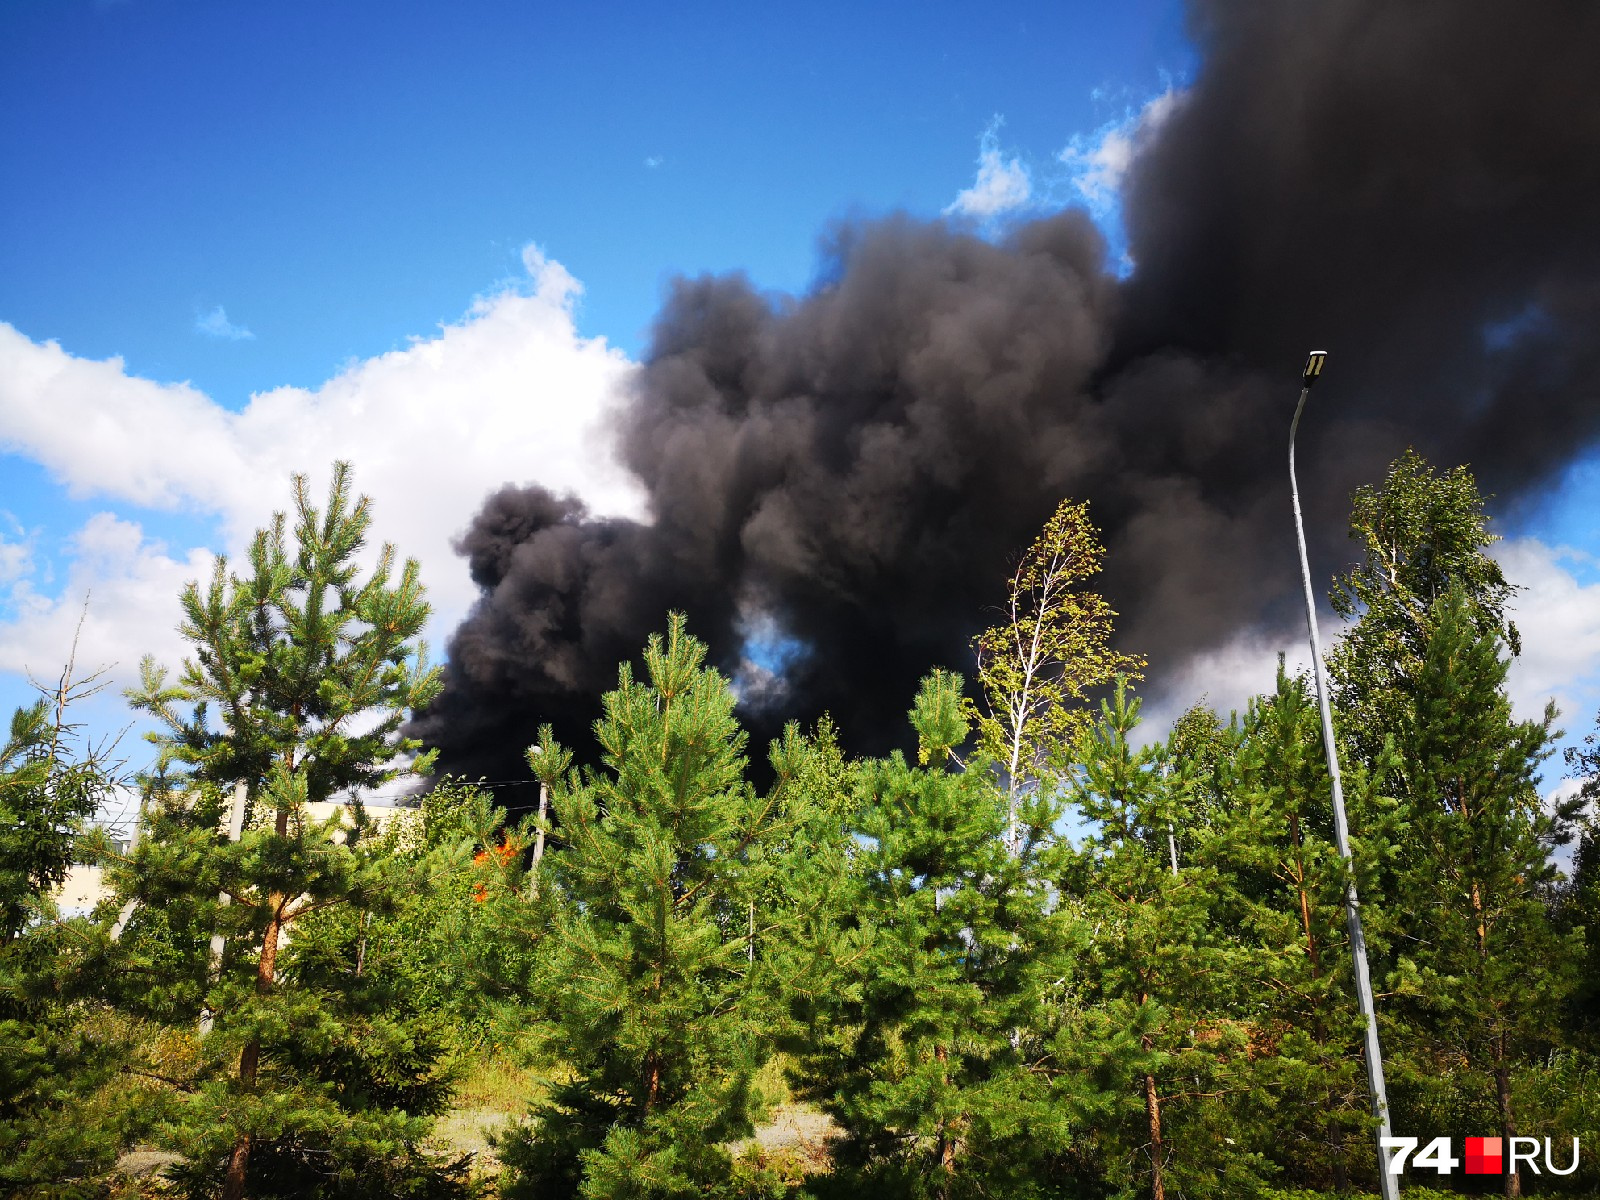 Чёрный дым над лесным массивом виден за несколько километров от места происшествия